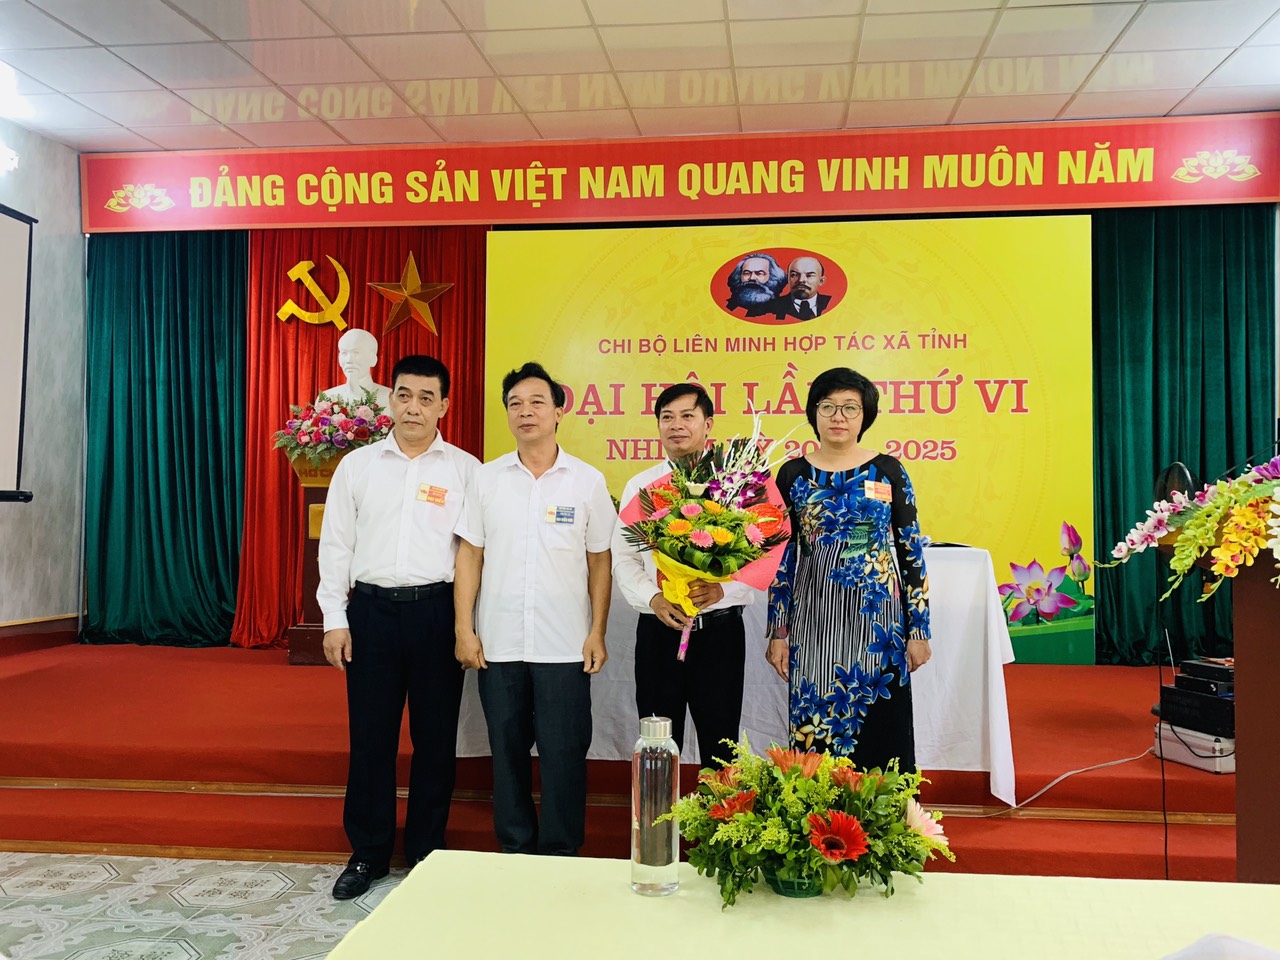 Chi bộ Liên minh Hợp tác xã tỉnh Thái Bình tổ chức Đại hội lần thứ VI nhiệm kỳ 2020 – 2025